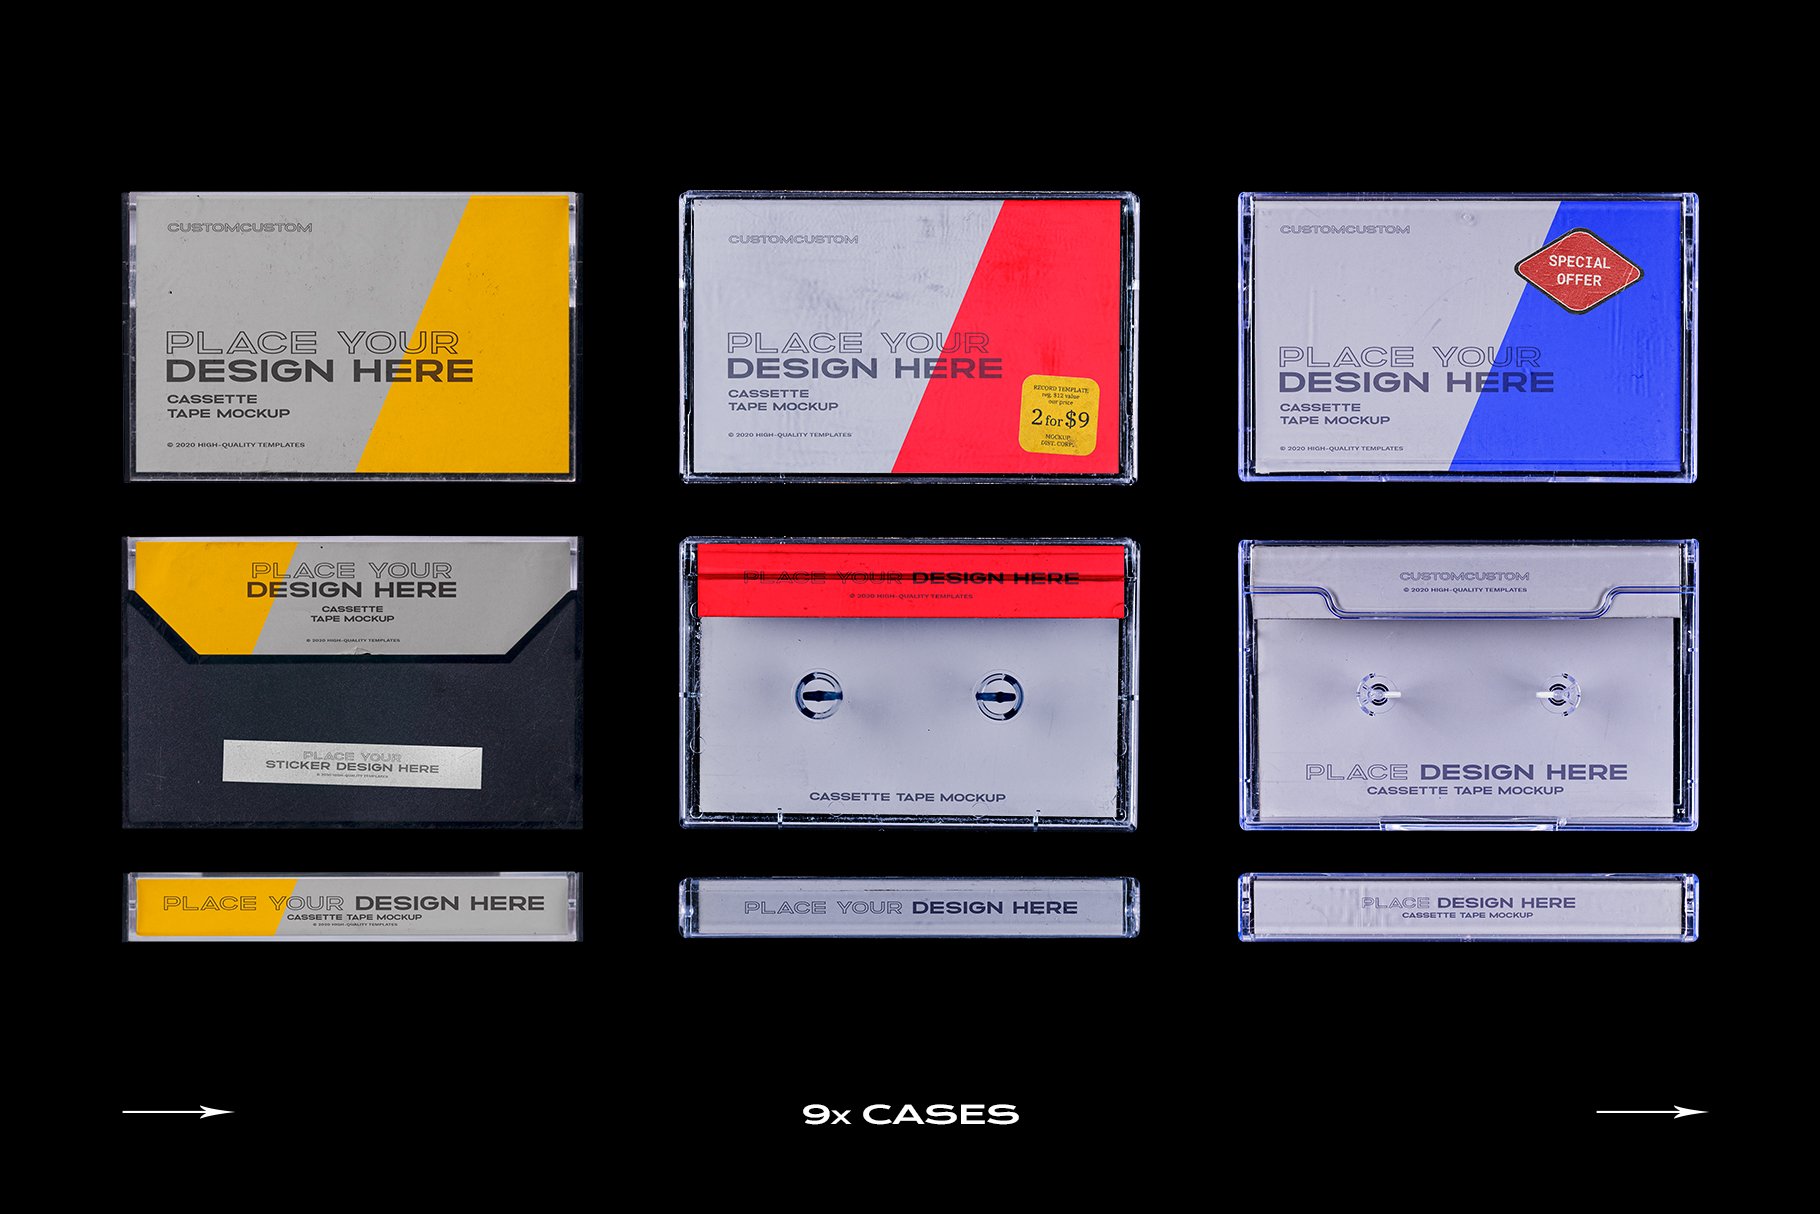 高级潮流复古盒式磁带样机捆绑塑料PSD模板 Cassette Tape Mockup Bundle Plastic（3994）图层云